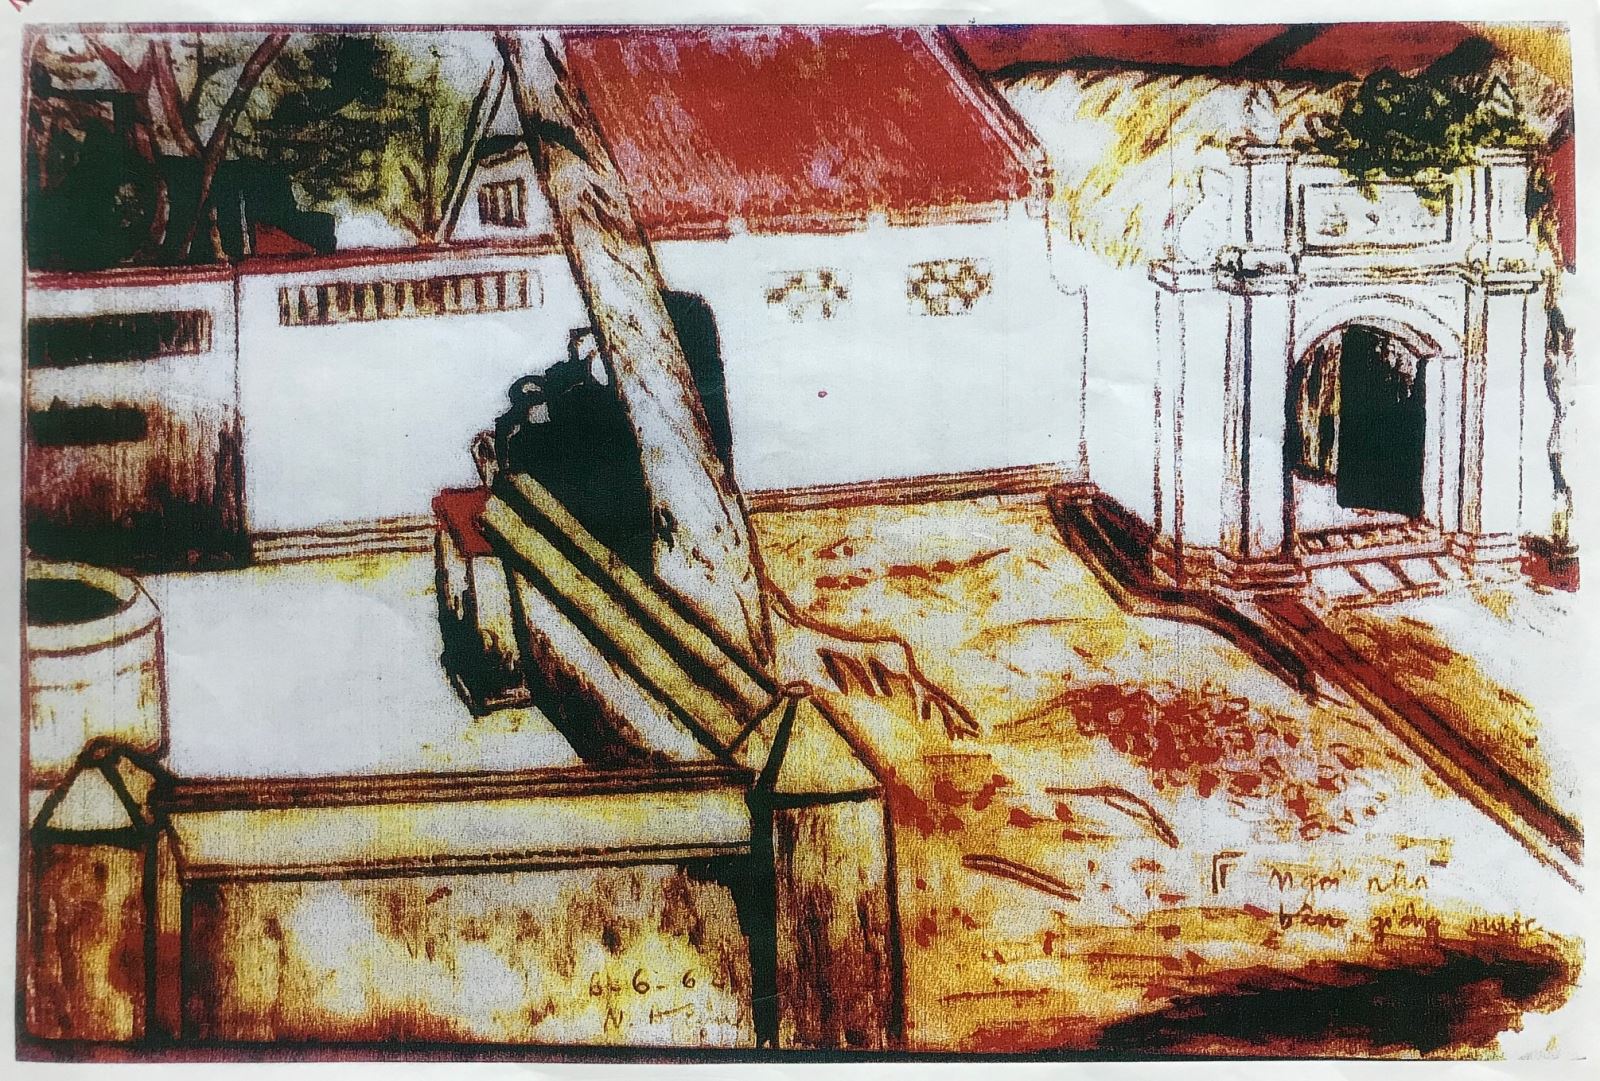 Bức họa dựng lại Giếng Điếm Kiều (đất công) xã đã bán trái thẩm quyền cho bà Minh đẫn đến tranh chấp với ngõ đi riêng của nhà ông Tiệm